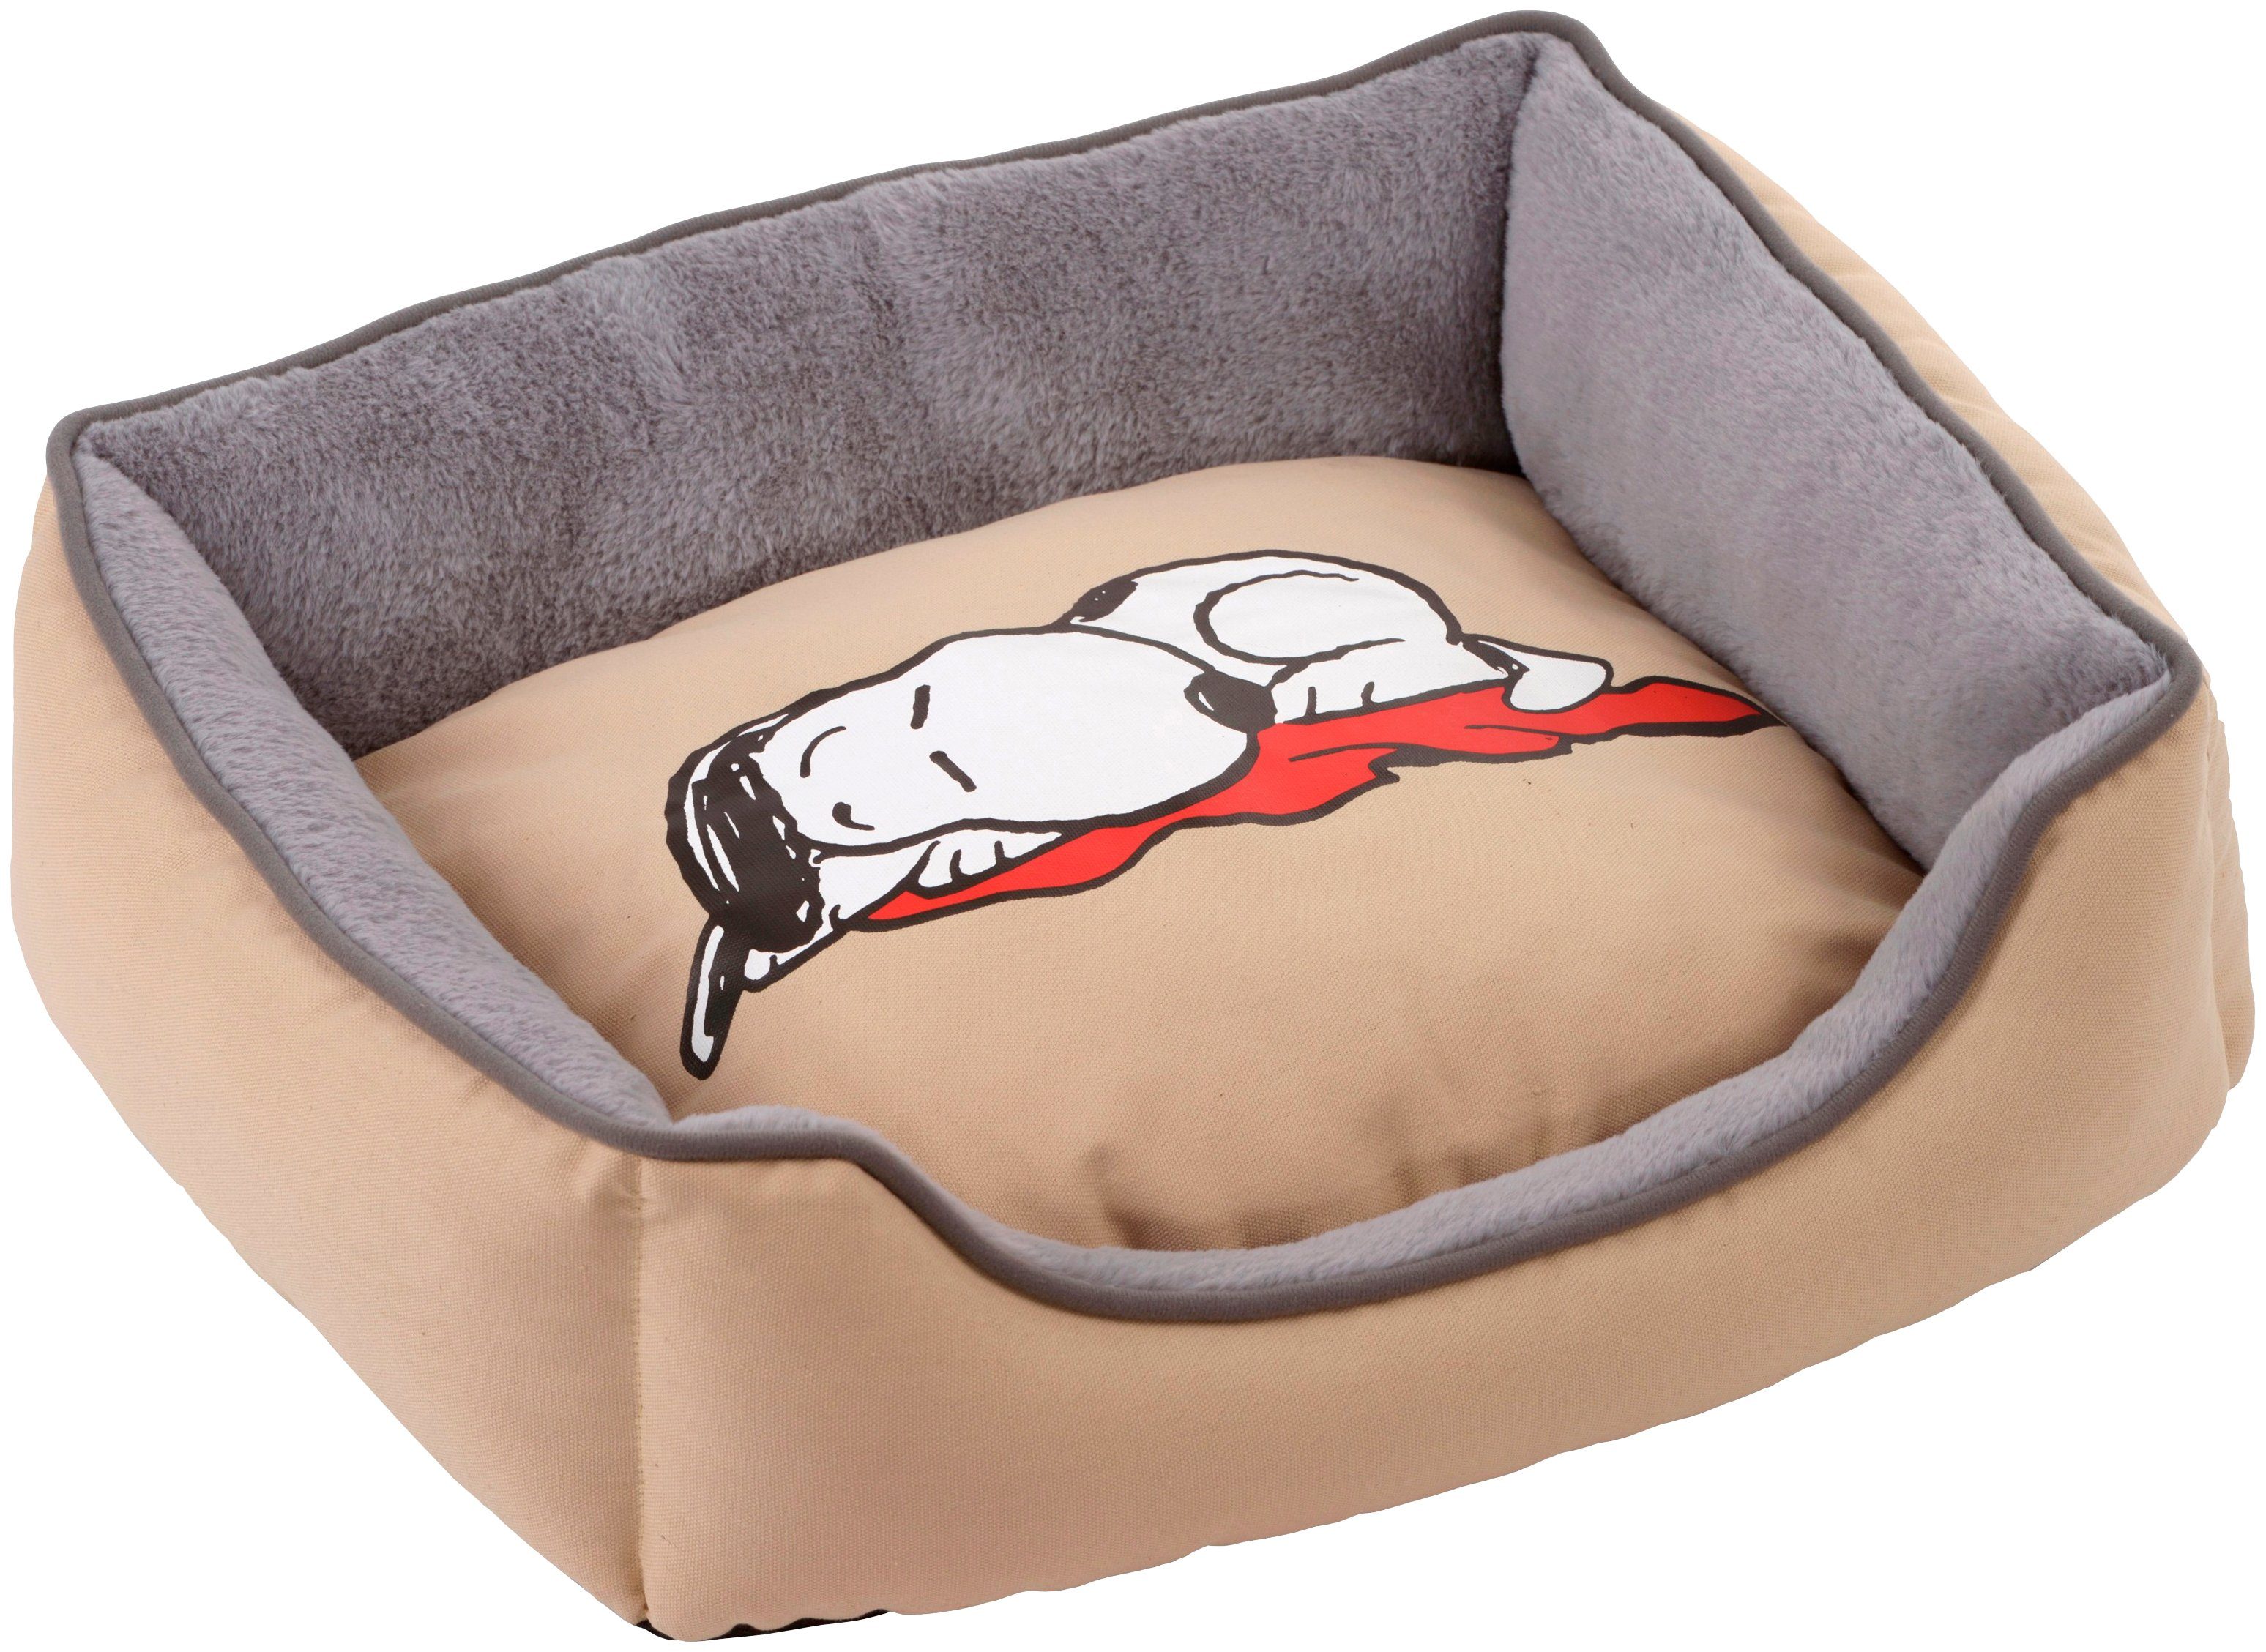 SILVIO design Tierbett »Snoopy«, BxLxH: 60x43x16 cm online kaufen | OTTO